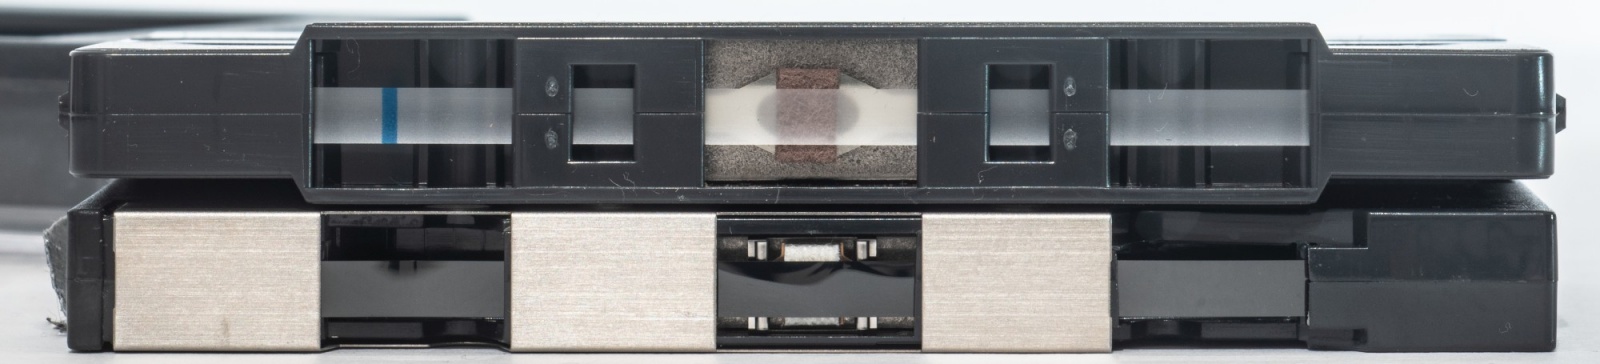 Древности: Philips DCC, кассета-неудачник - 4